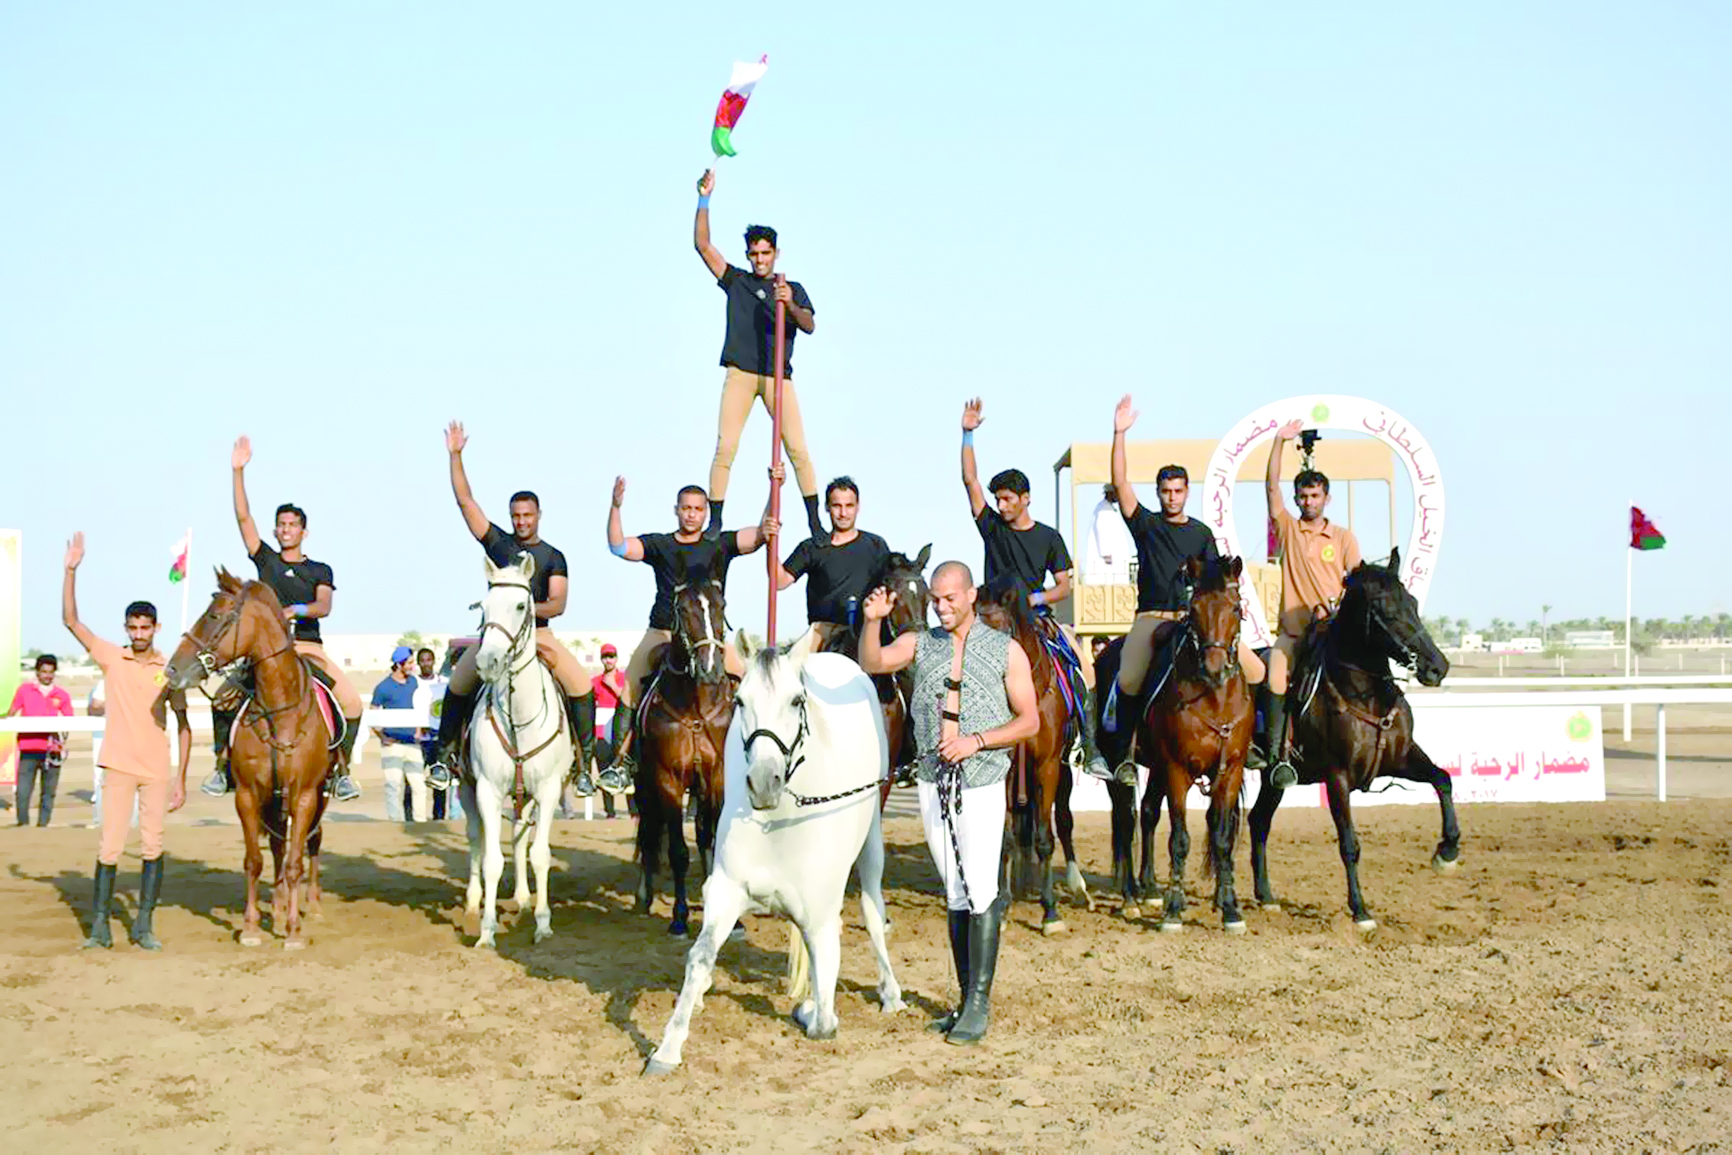 في خامس سباقات الخيل السلطاني

الإثارة والمتعة عنوان سباق كأس العيد الوطني